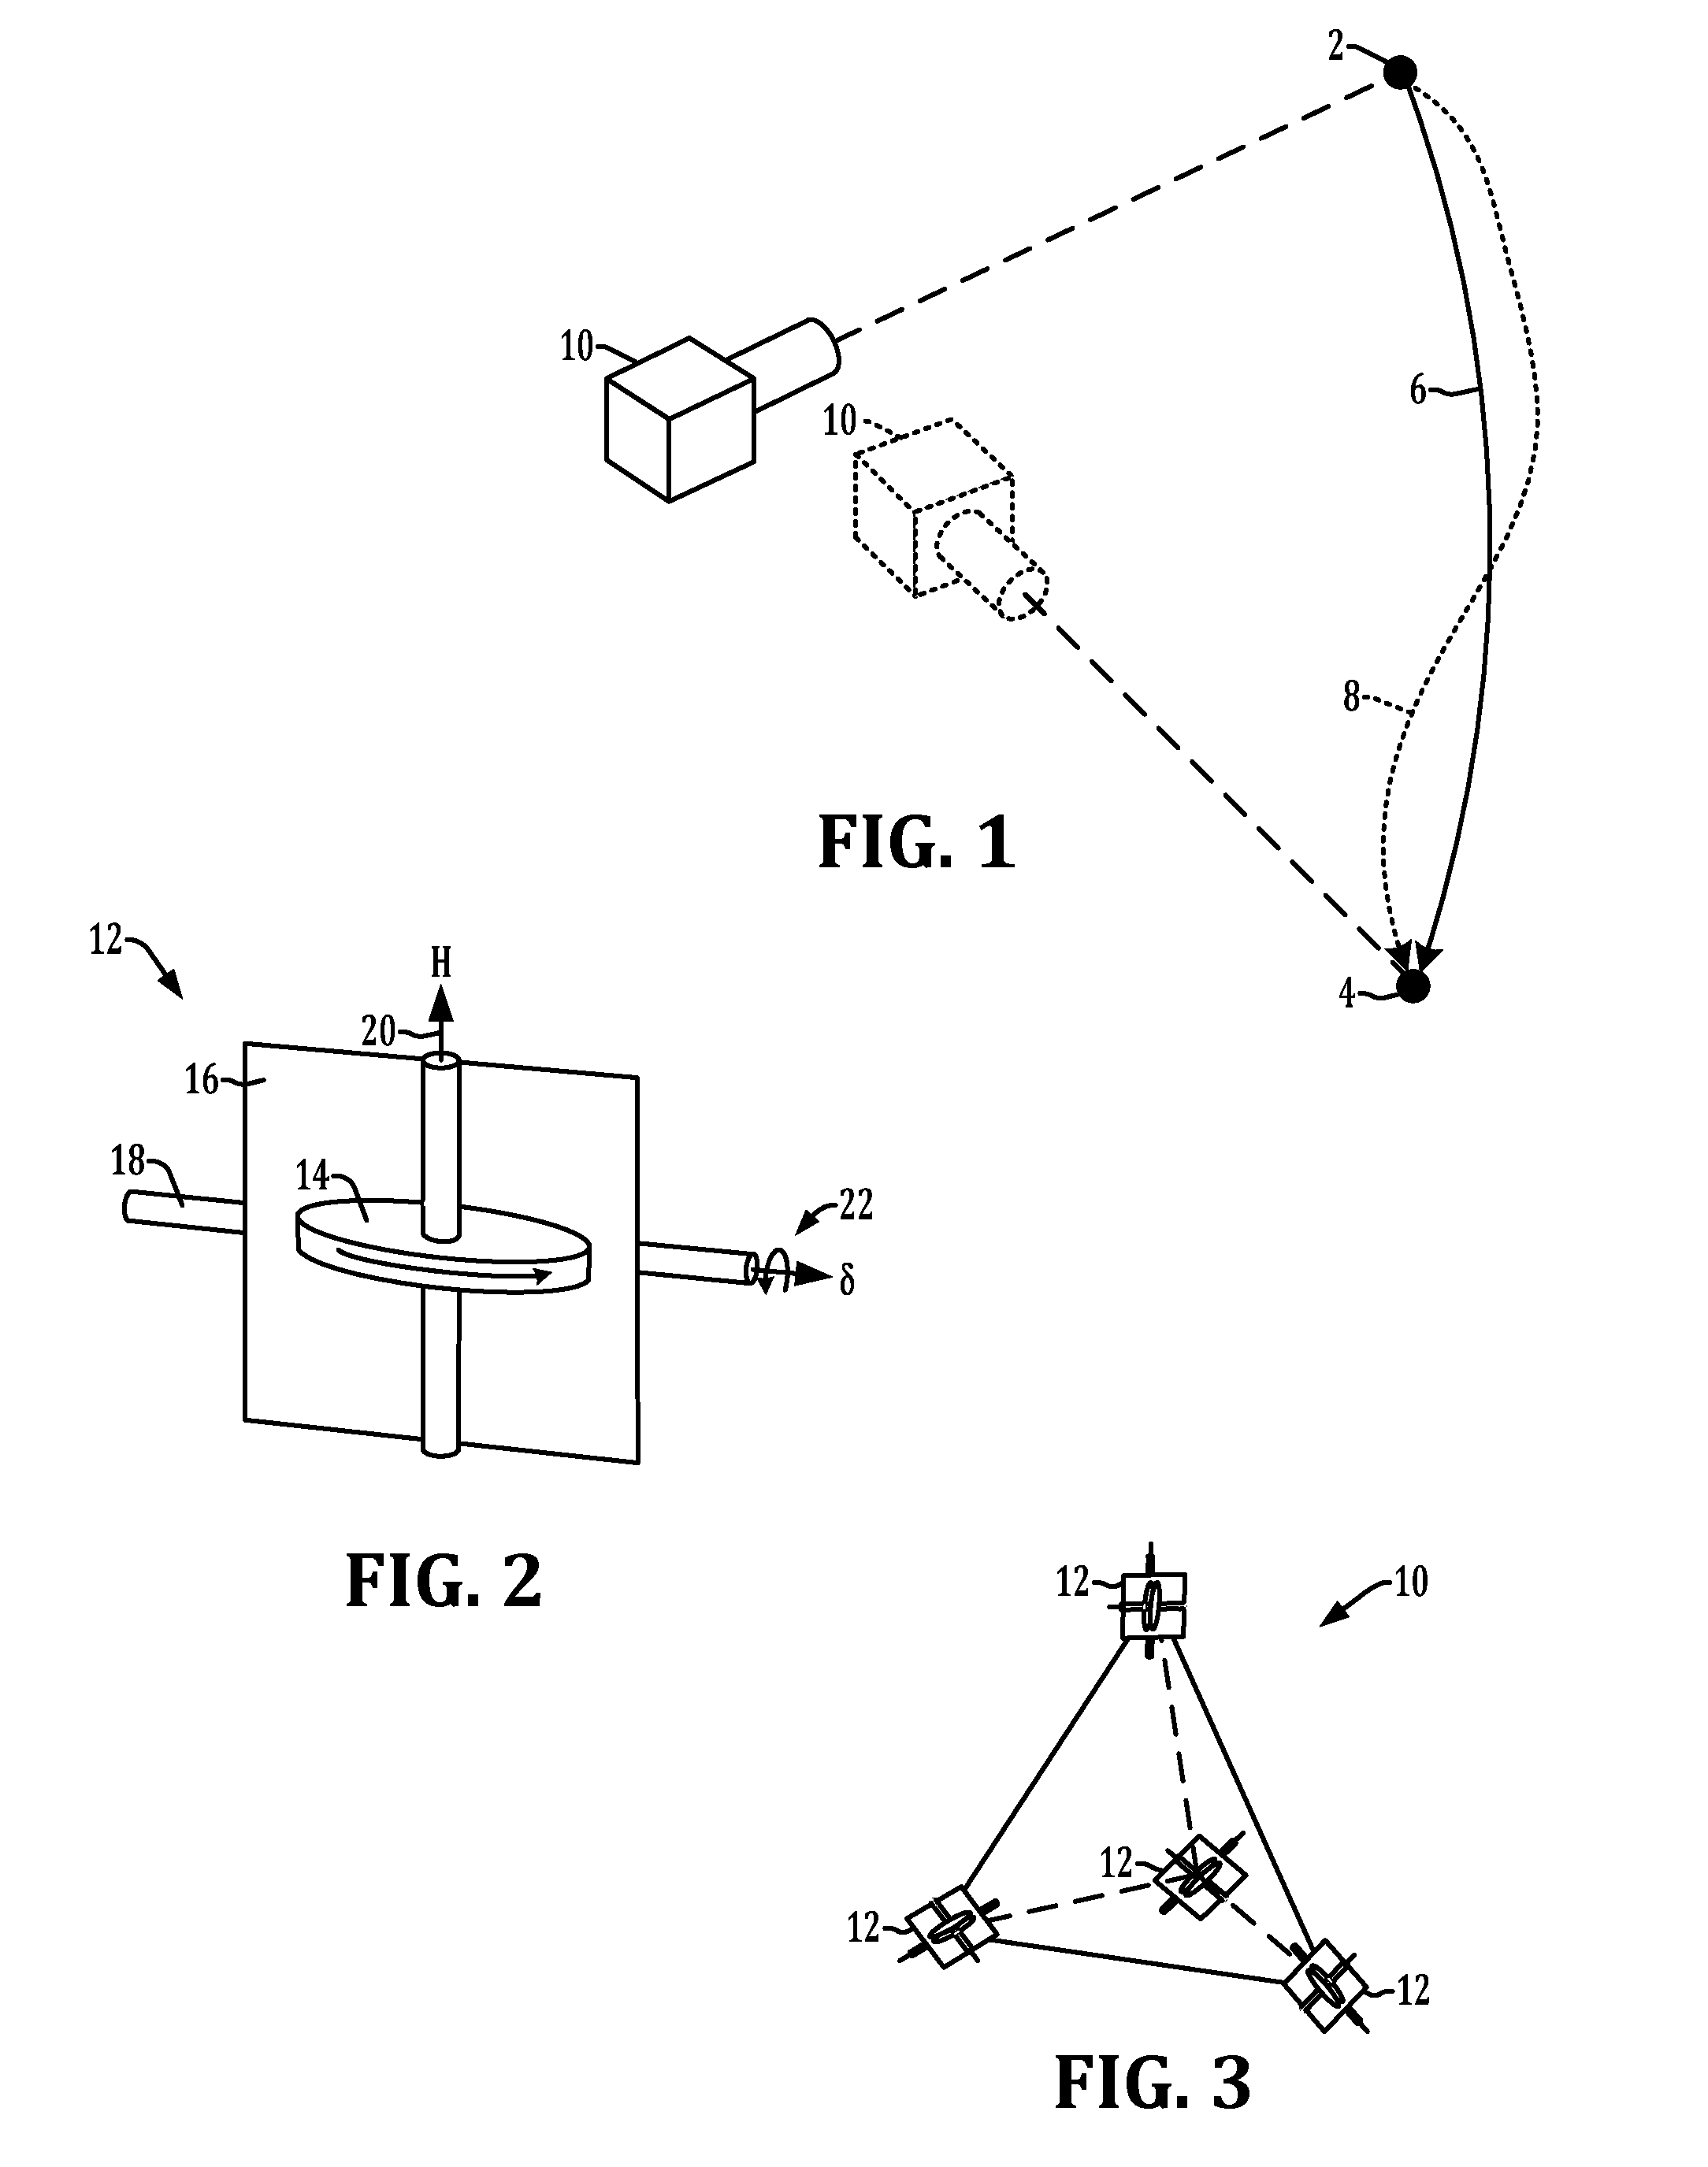 Method and apparatus for determining spacecraft maneuvers